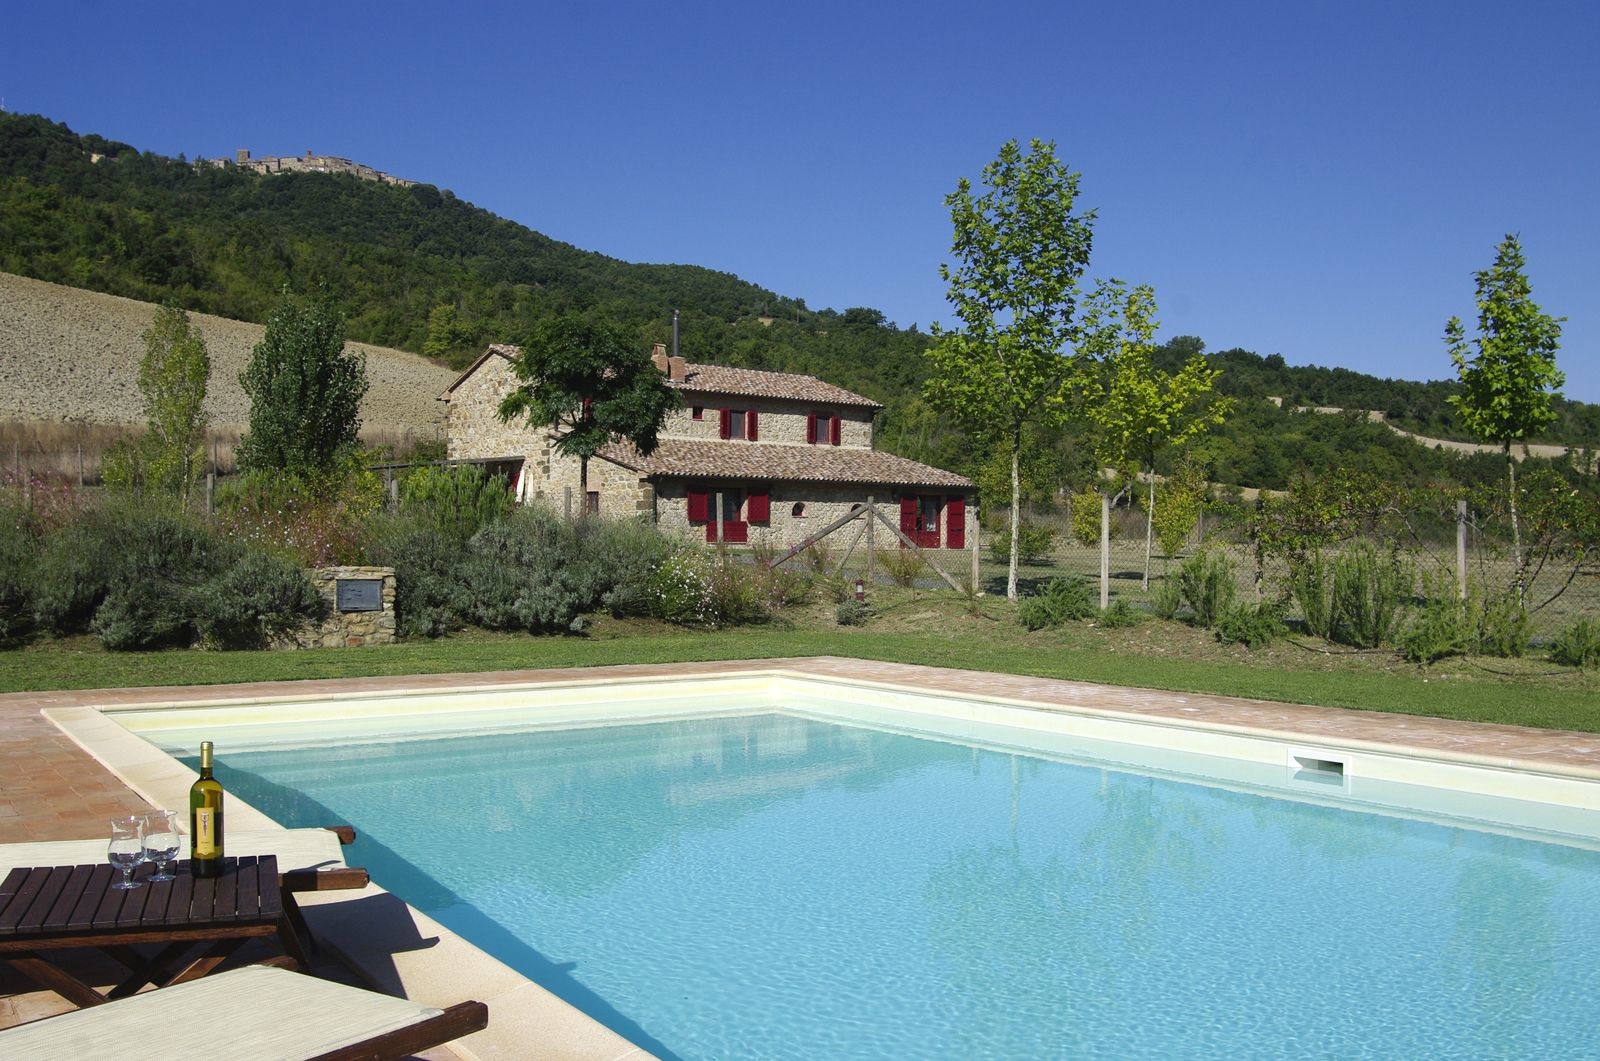 6 bedroom Villa in Tuscany - CASALIO VILLAS